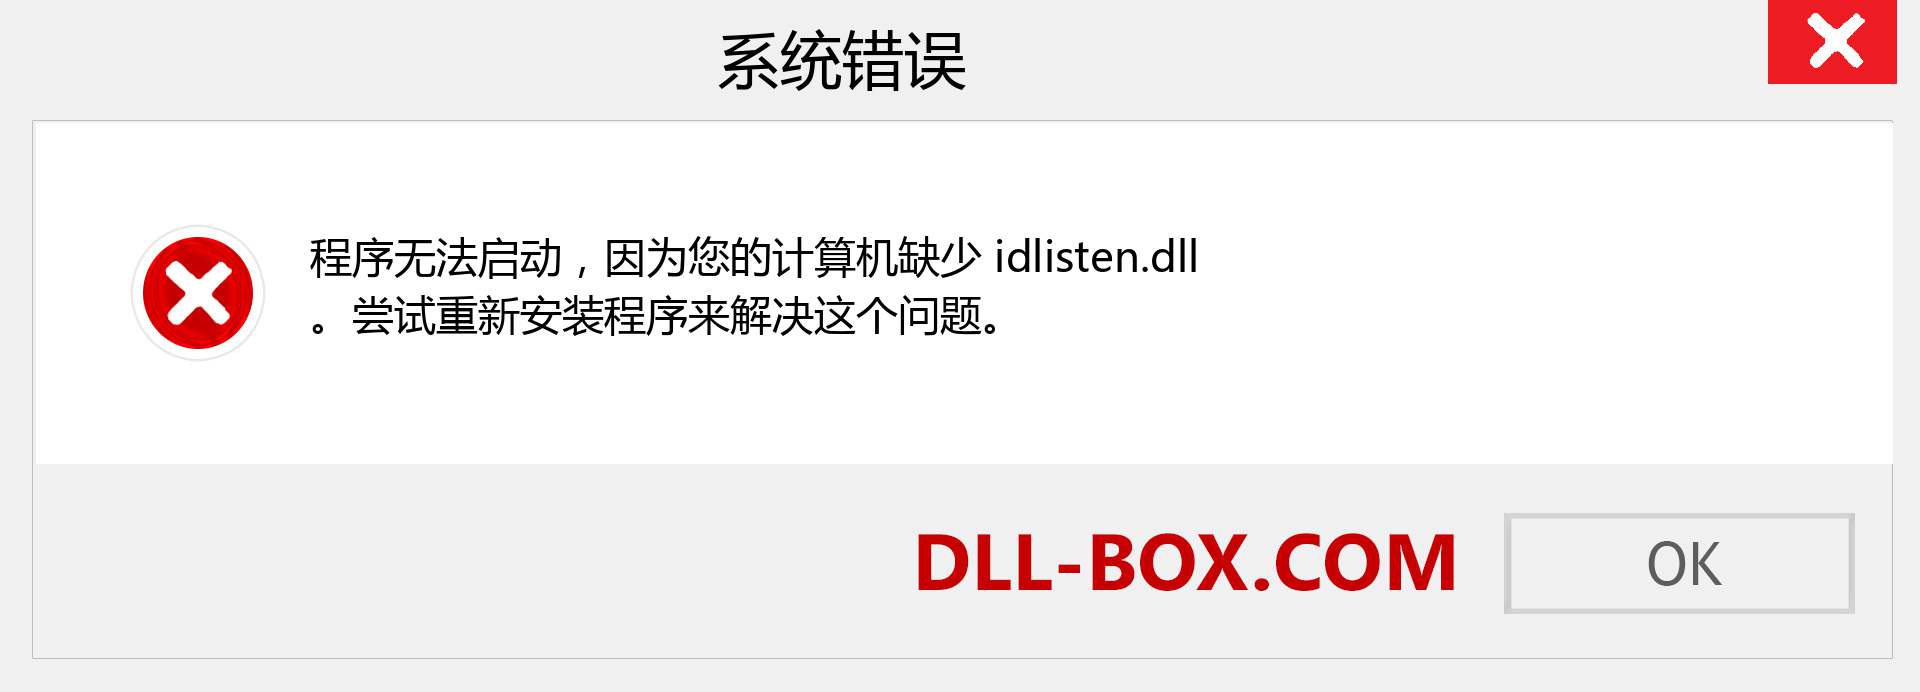 idlisten.dll 文件丢失？。 适用于 Windows 7、8、10 的下载 - 修复 Windows、照片、图像上的 idlisten dll 丢失错误